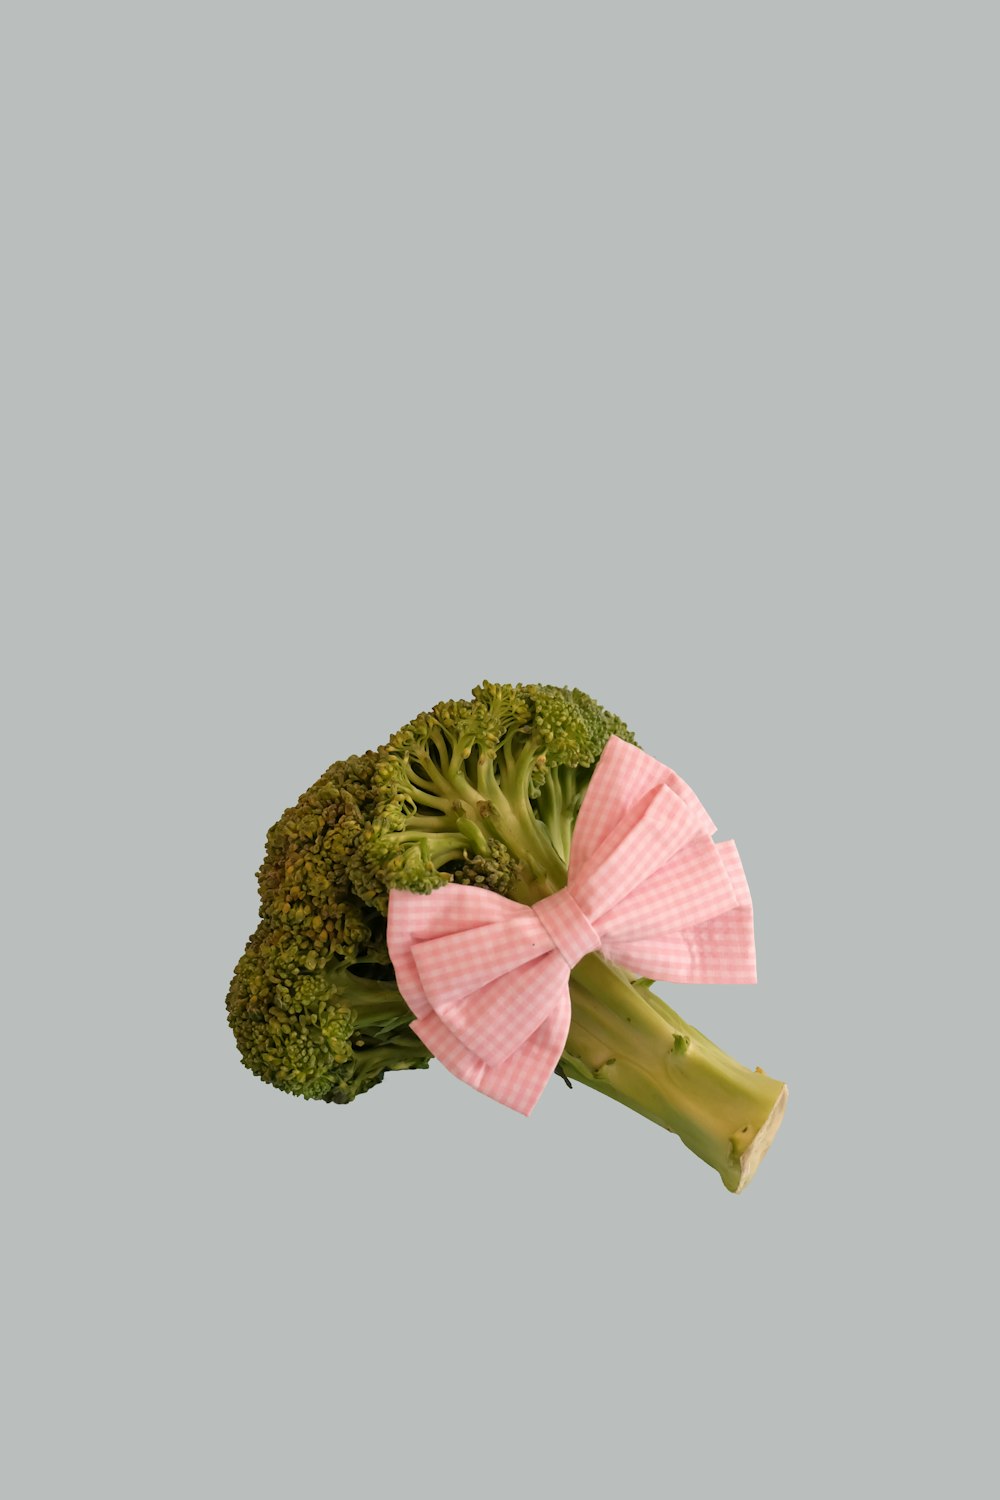 brócolis vegetal com fita rosa